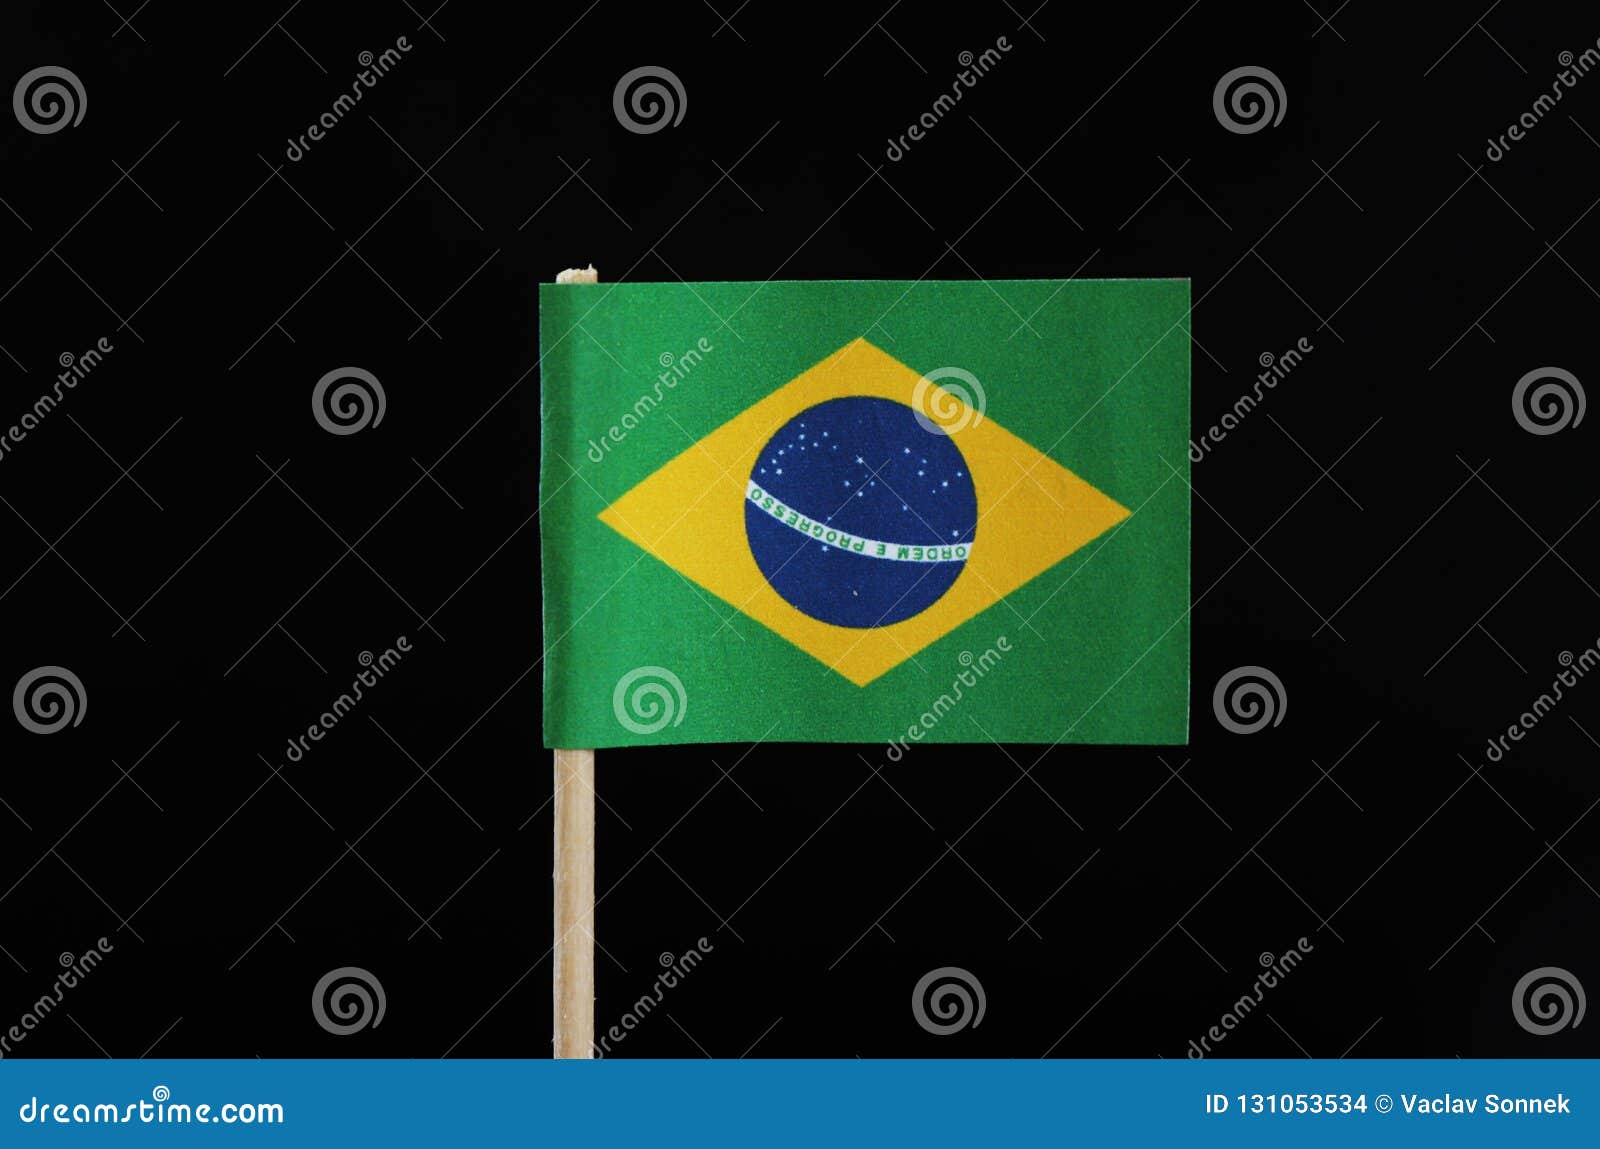 Hãy chiêm ngưỡng cờ quốc gia Brazil tuyệt đẹp được in trên que tăm và trên nền đen tối giản. Với sắc màu tươi sáng, mẫu thiết kế ấn tượng, và chất liệu cao cấp, hình ảnh này sẽ khiến bạn say mê và thèm muốn nhiều hơn.